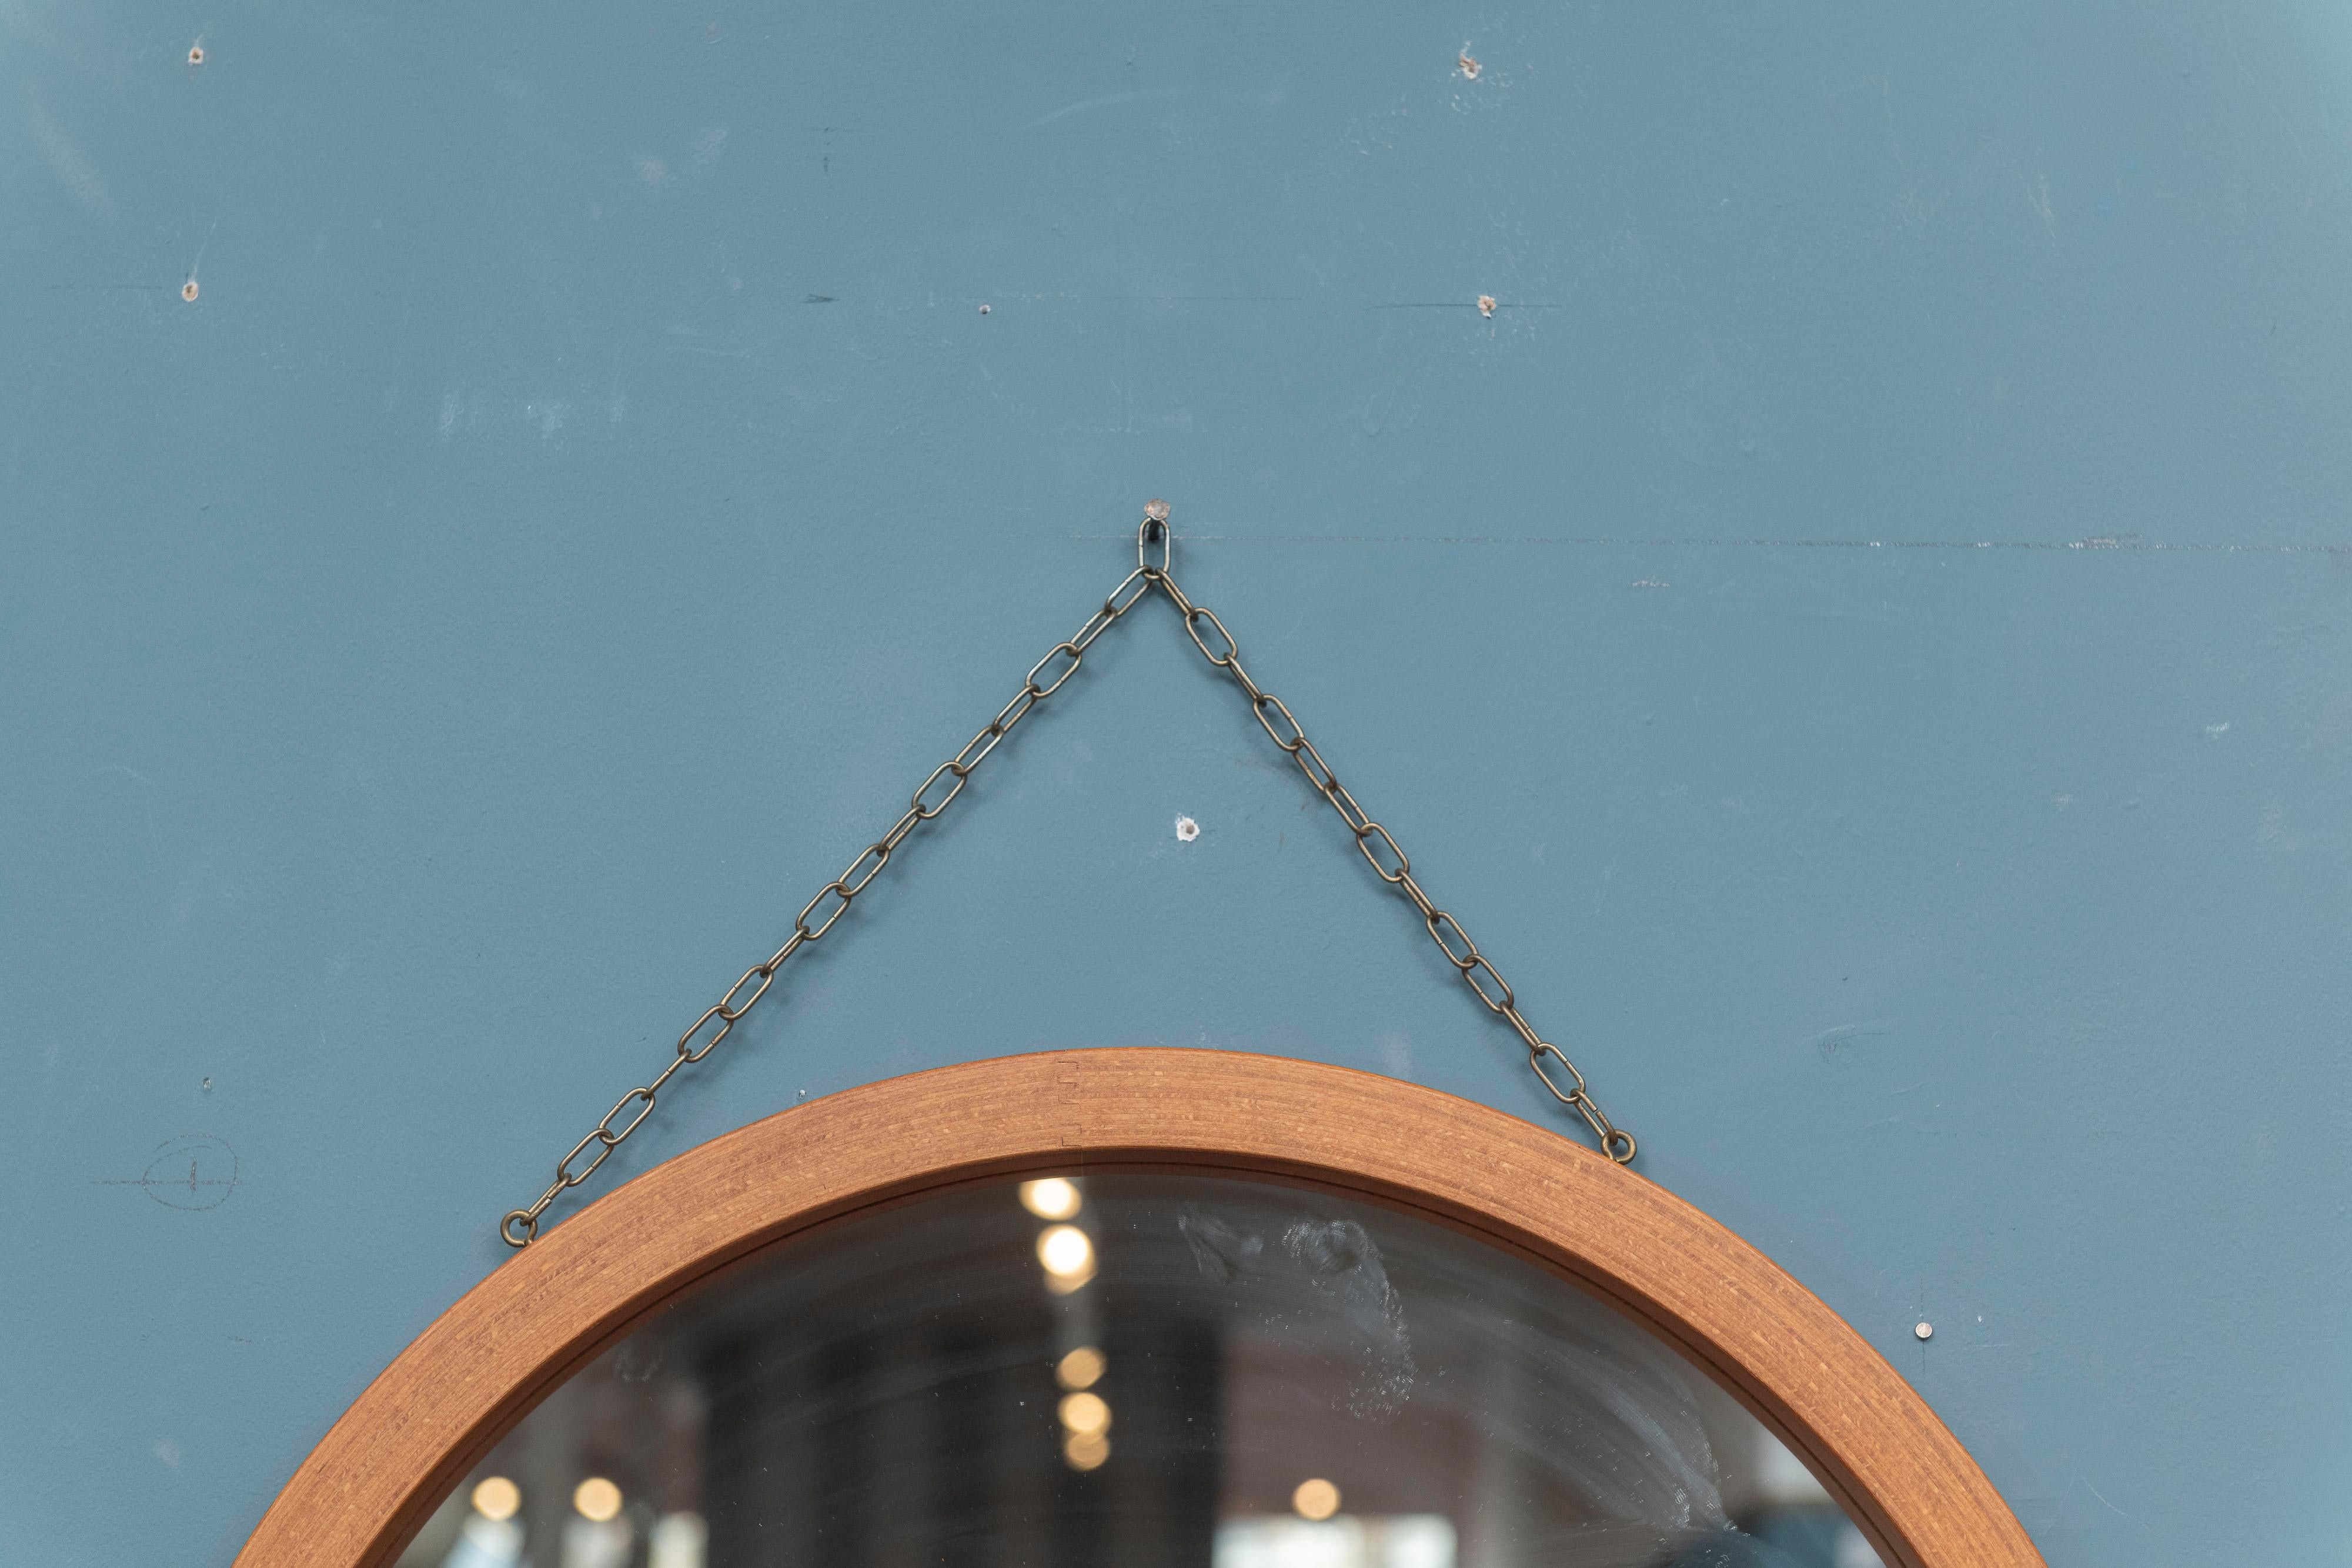 Runder skandinavisch-moderner Wandspiegel zum Aufhängen. Hergestellt aus ineinandergreifendem Teakholz-Sperrholz mit einer patinierten Messingkette zum Aufhängen.